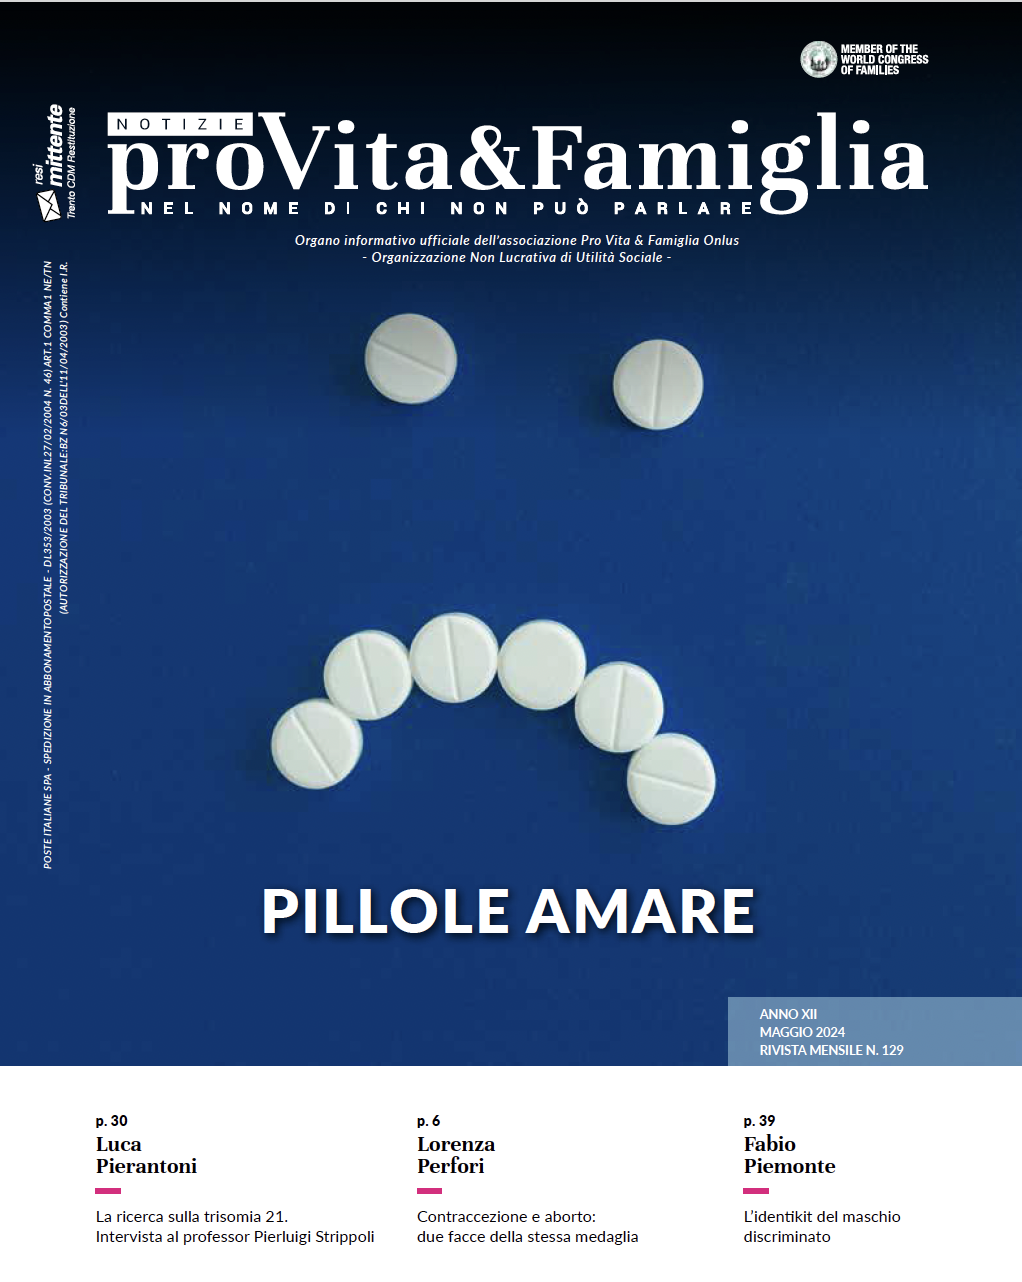 copertina NPVF 129 pillole amare